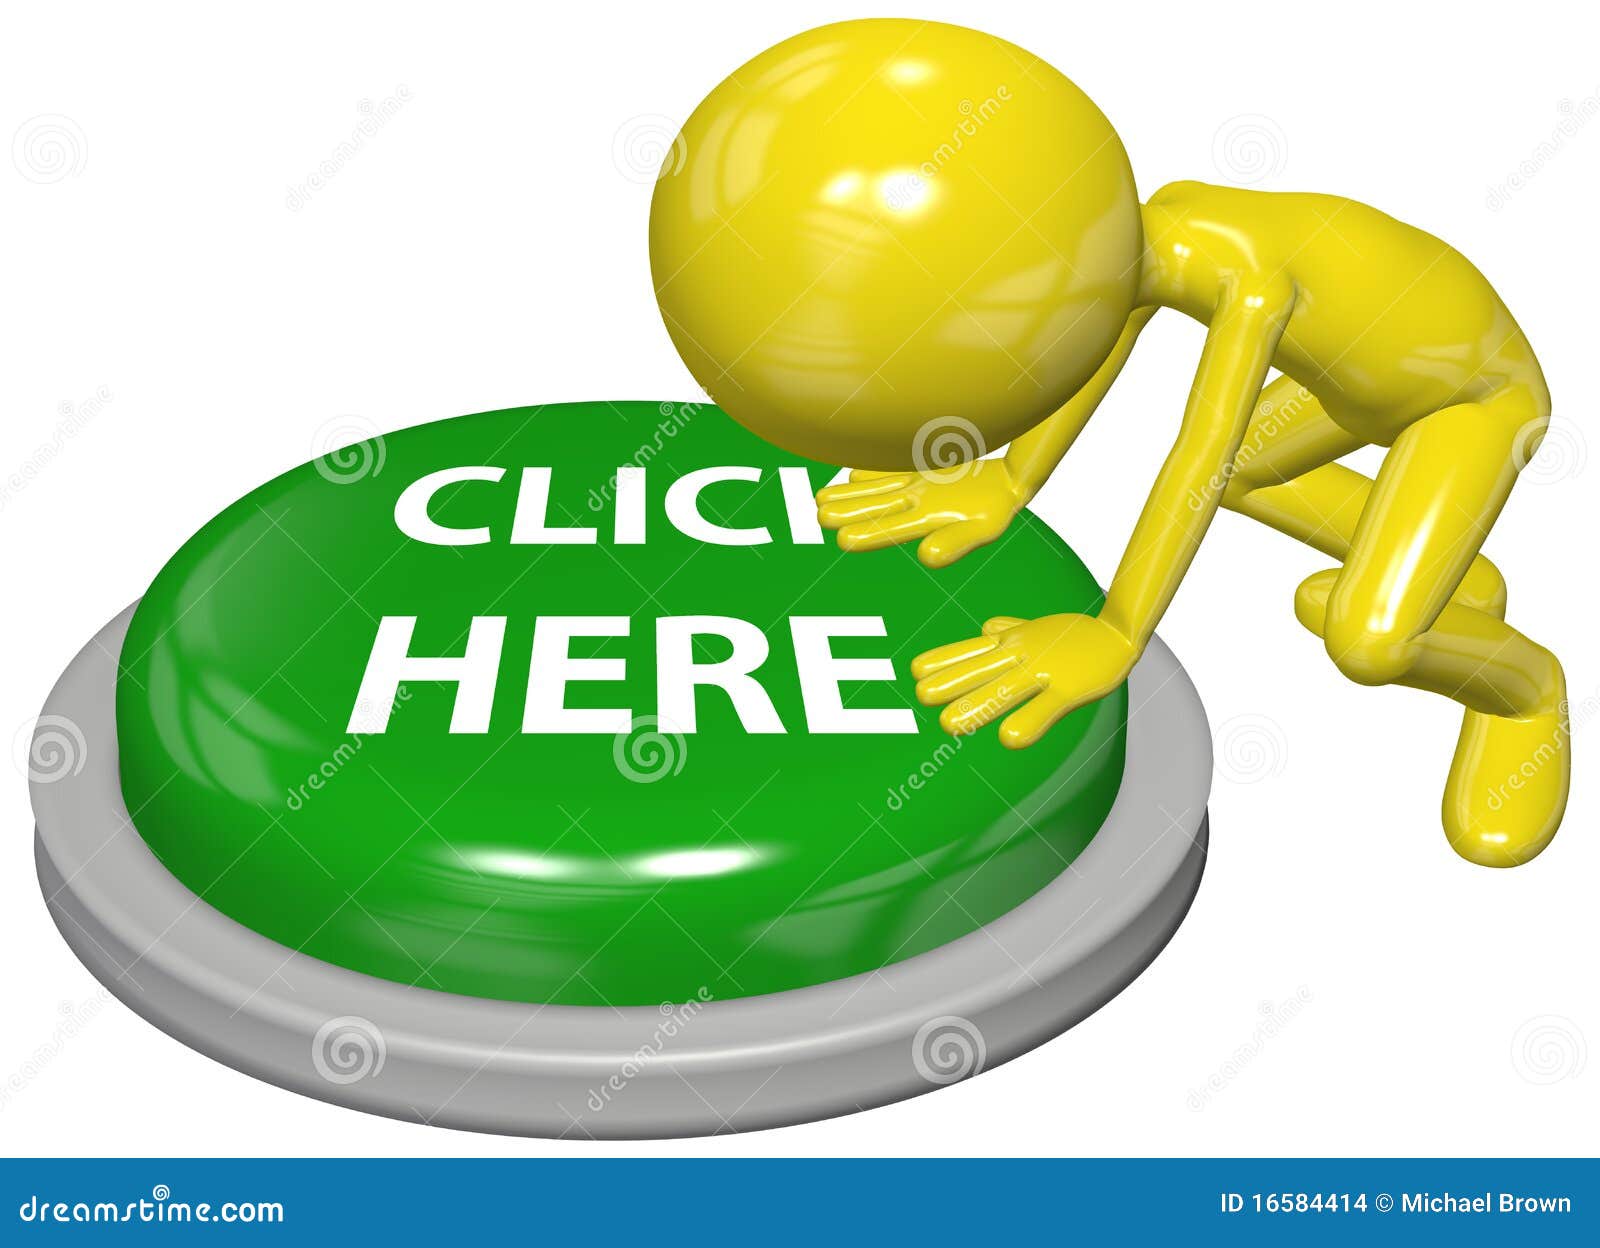 Person Push CLICK HERE Website Link Button Stock Photo | CartoonDealer.com #16584414